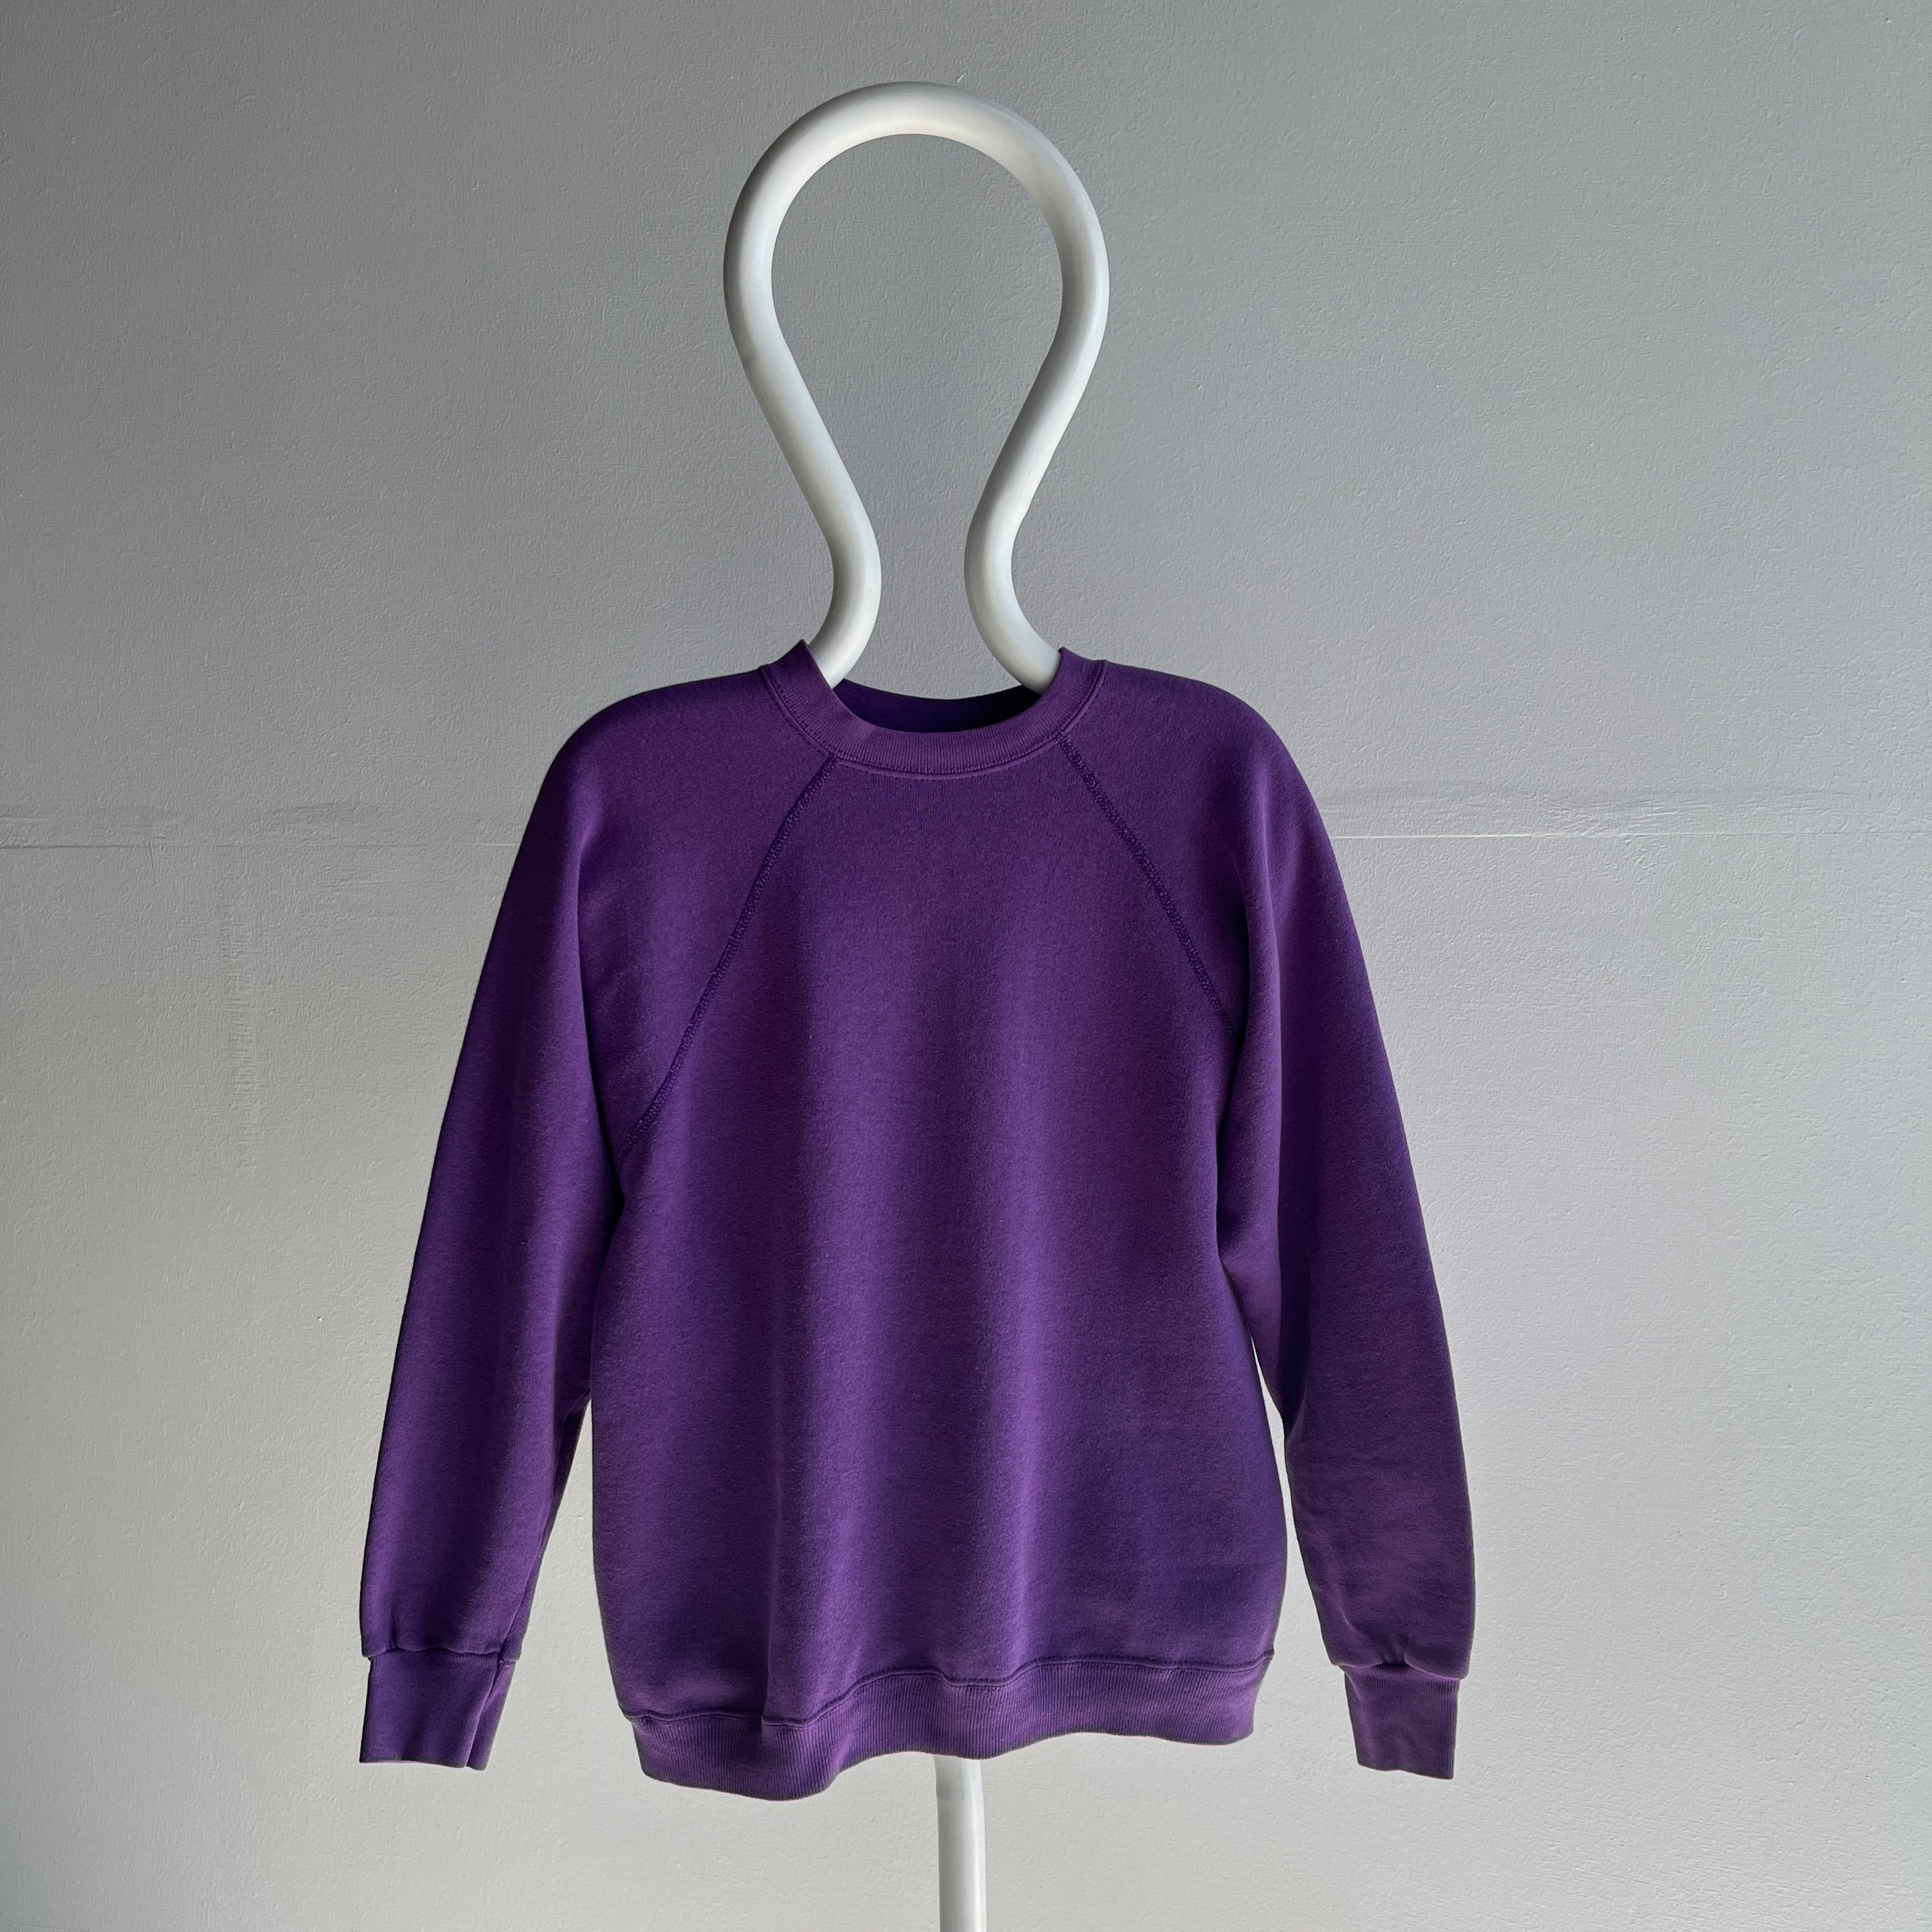 1980s Sweats Appeal by Tultex Nicely Faded Purple Raglan